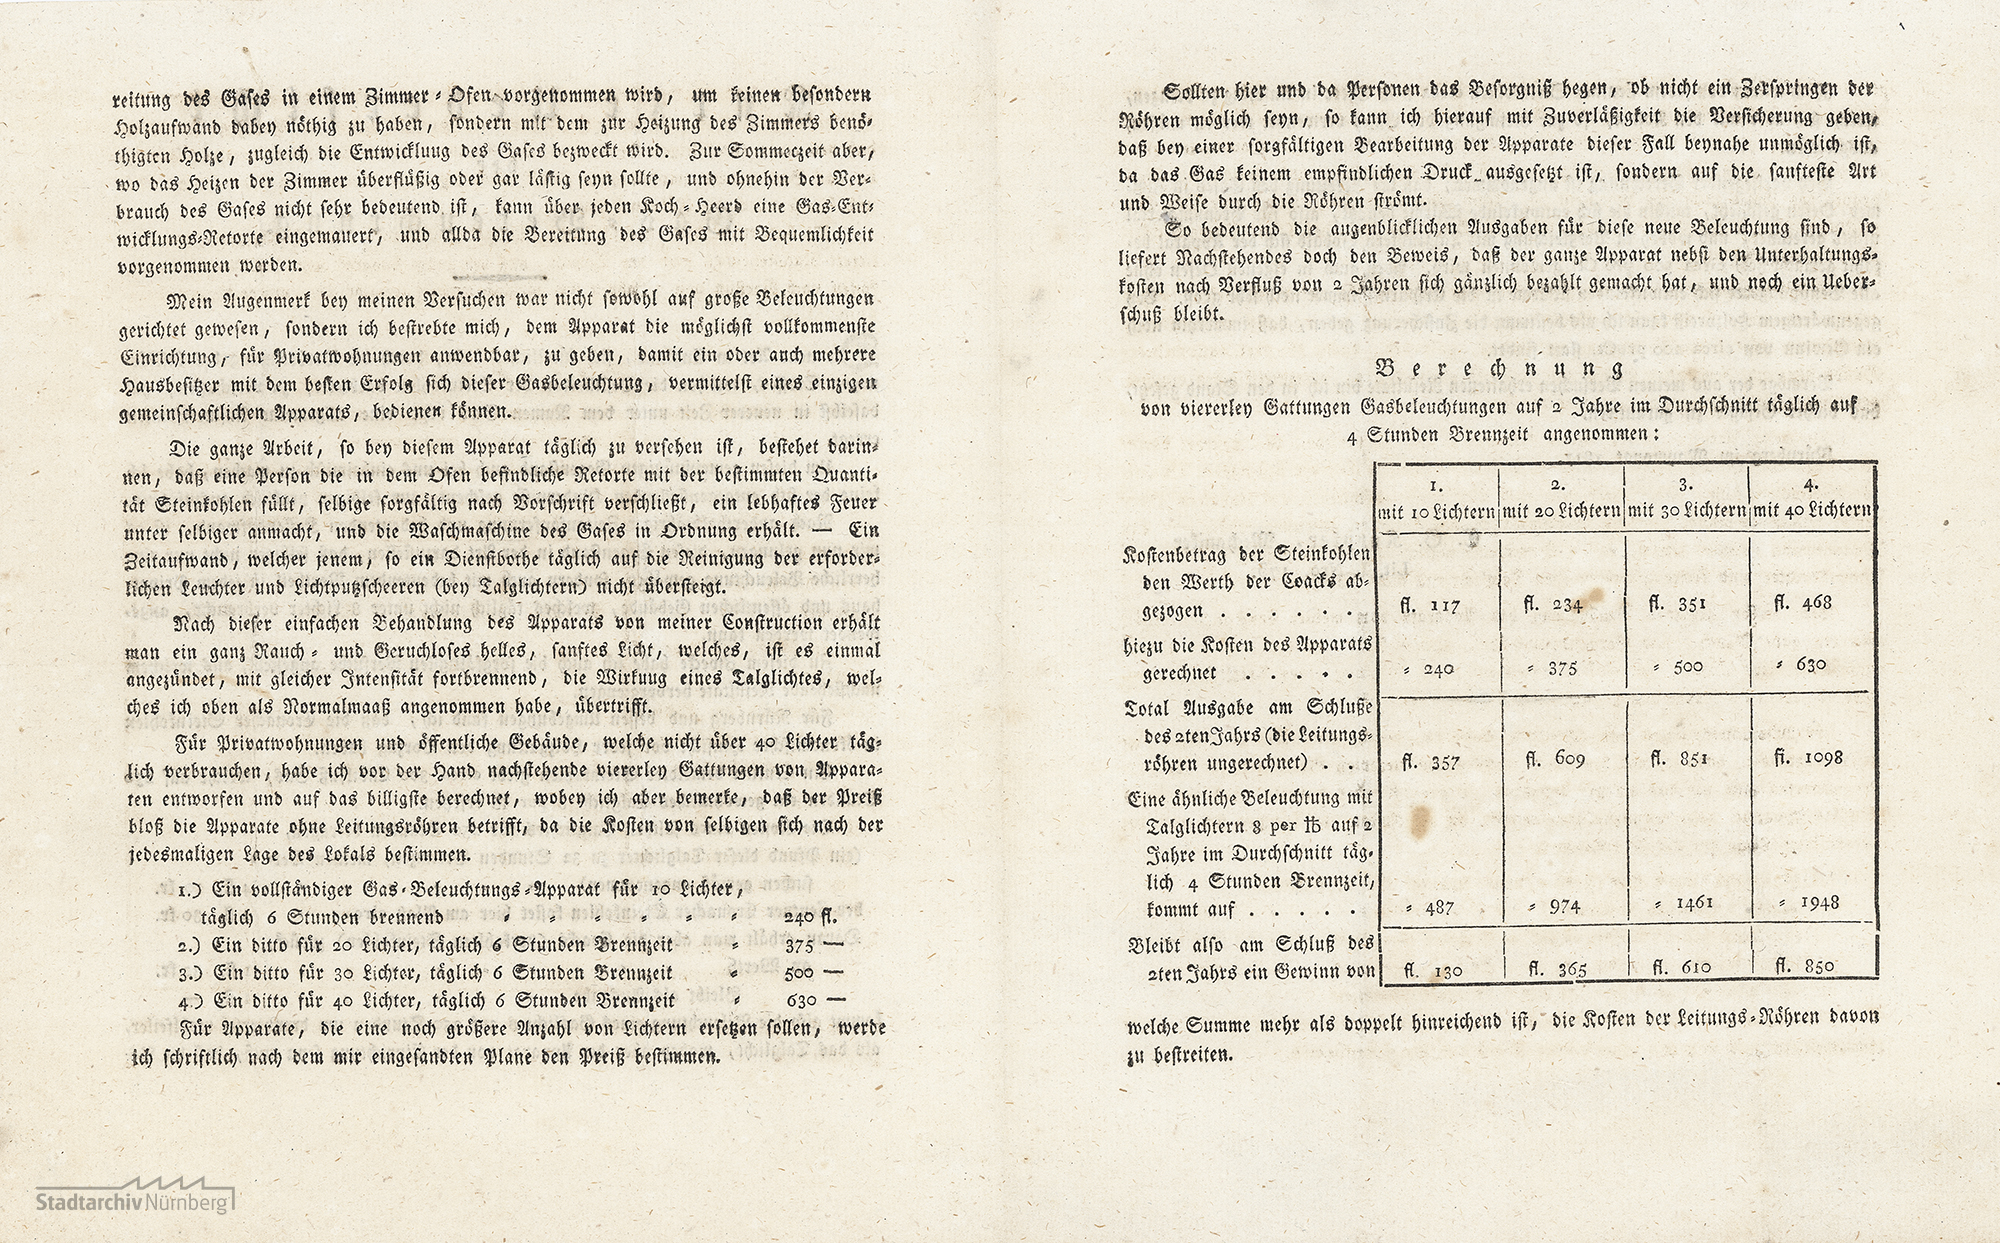 Berechnungen zur Gasbeleuchtung in Nürnberg von Konrad Georg Kuppler